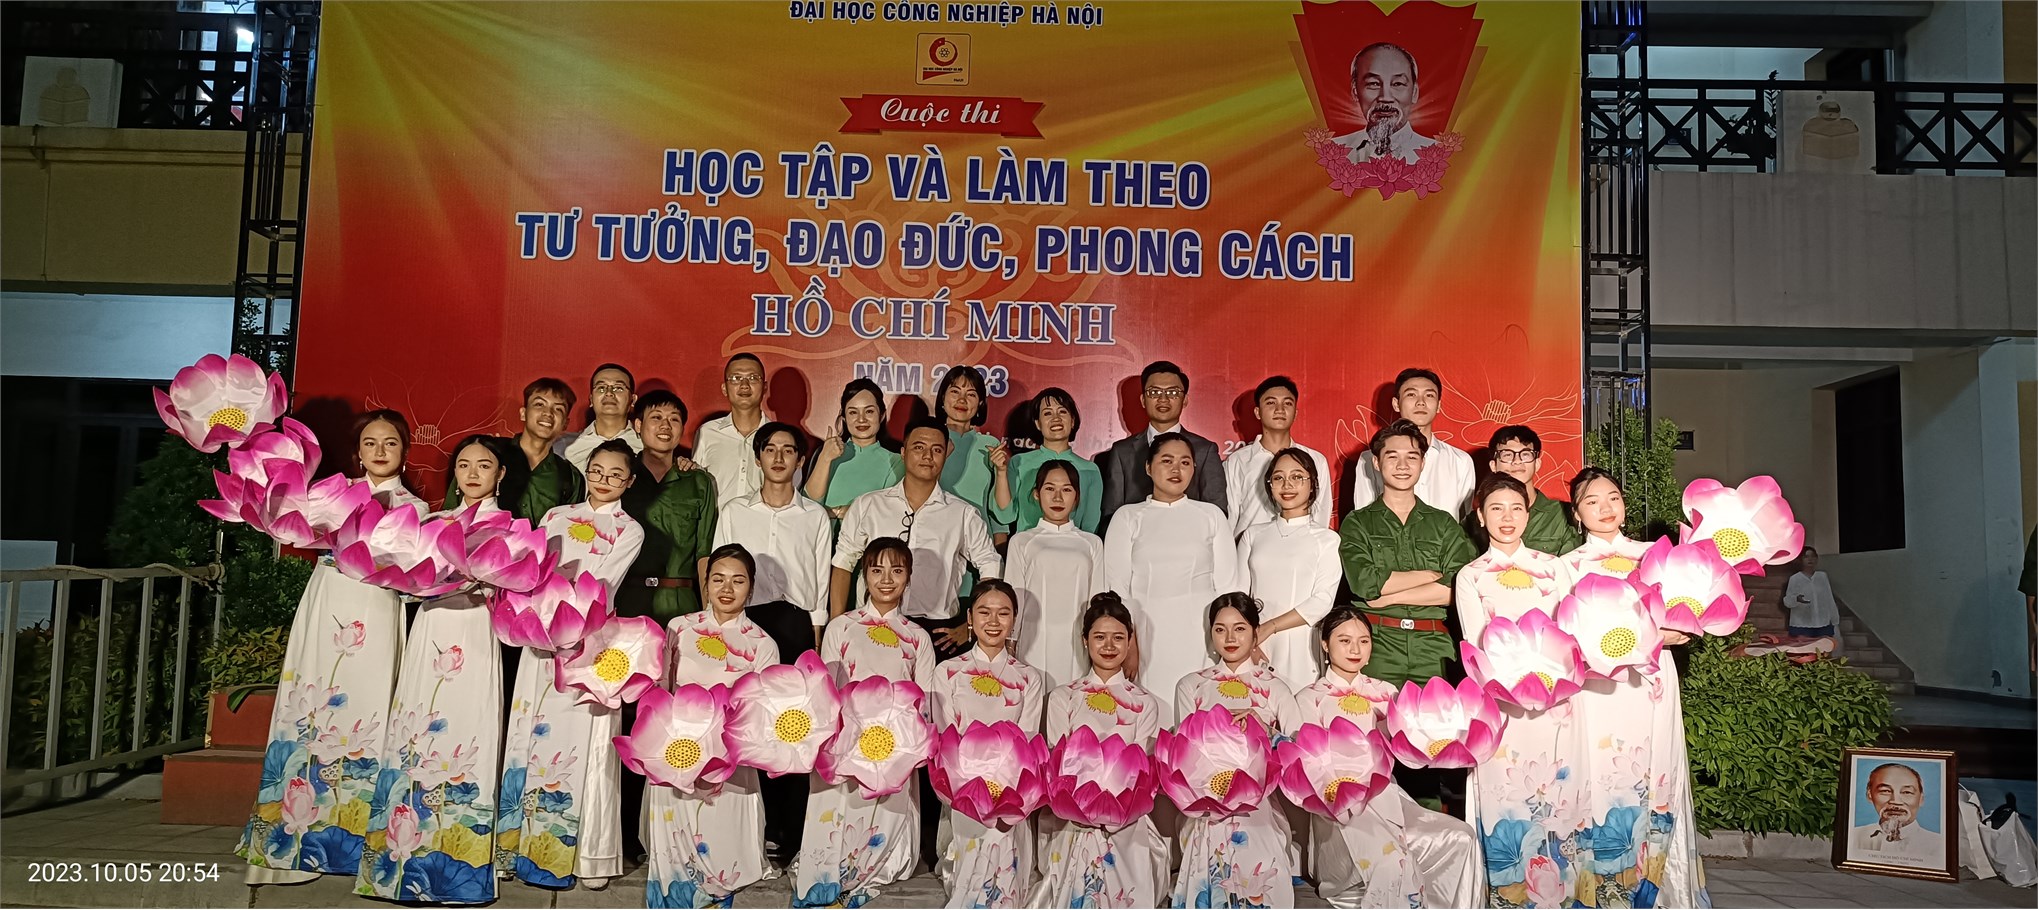 Liên chi bộ: TT Việt Nhật - Khoa Lý luận chính trị - Phòng thanh tra - Trung tâm hỗ trợ sinh viên giành giải Nhì toàn đoàn tại cuộc thi Học tập và làm theo tư tưởng, đạo đức, phong cách Hồ Chí Minh năm 2023